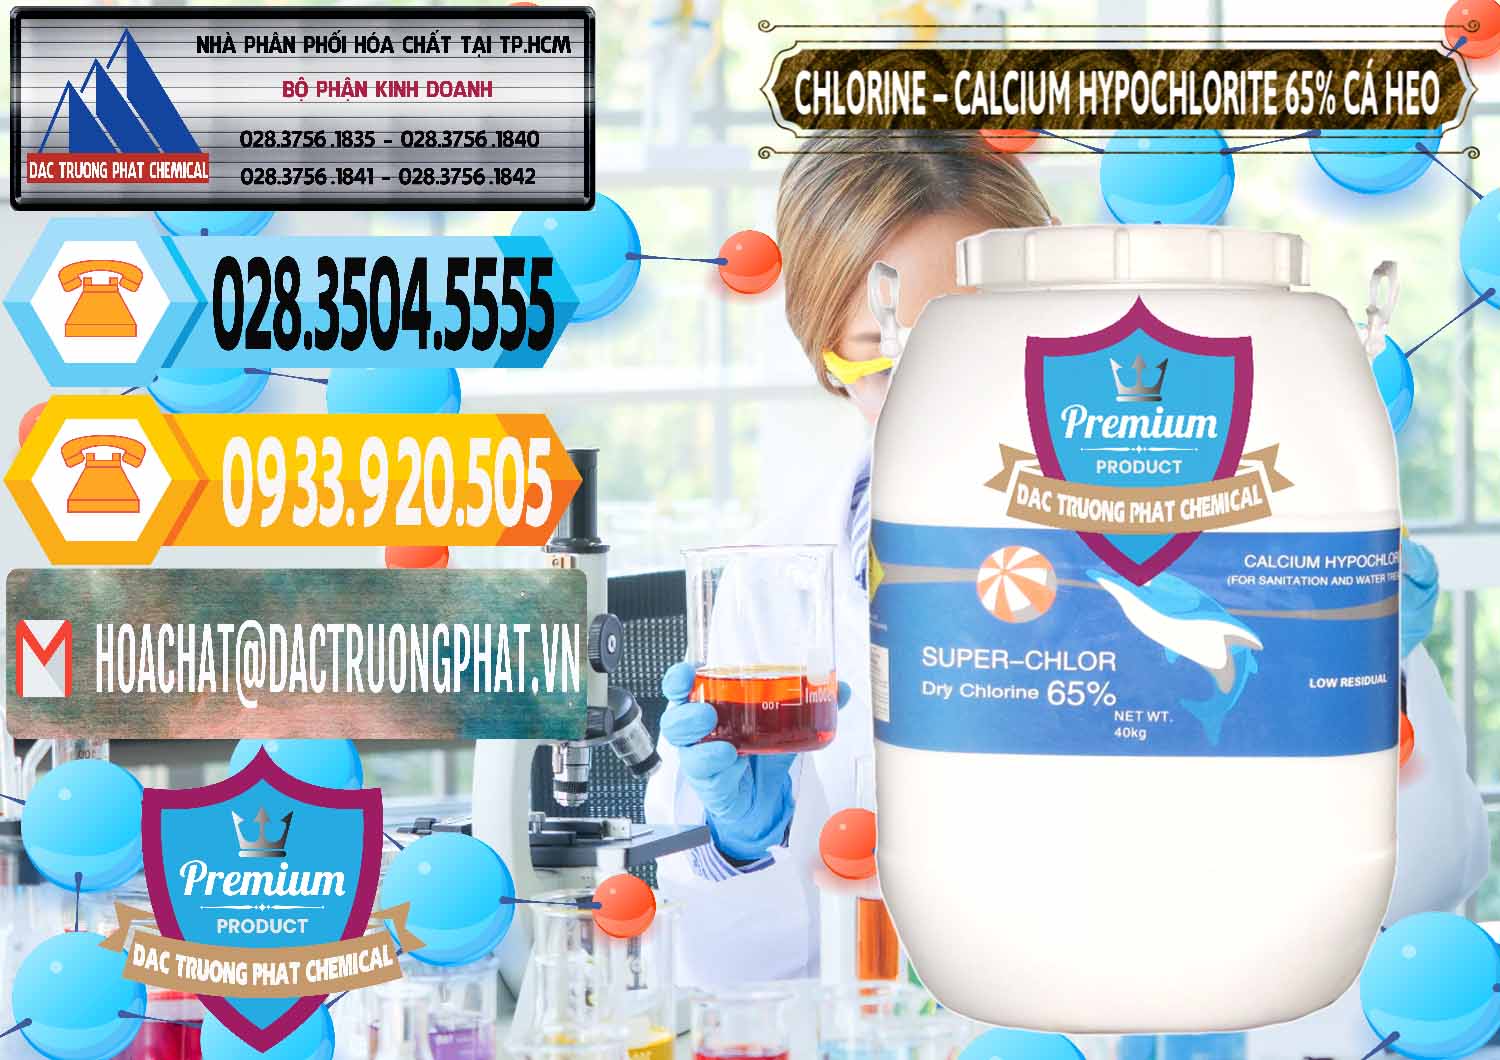 Đơn vị chuyên bán _ cung ứng Clorin - Chlorine Cá Heo 65% Trung Quốc China - 0053 - Kinh doanh ( phân phối ) hóa chất tại TP.HCM - hoachattayrua.net